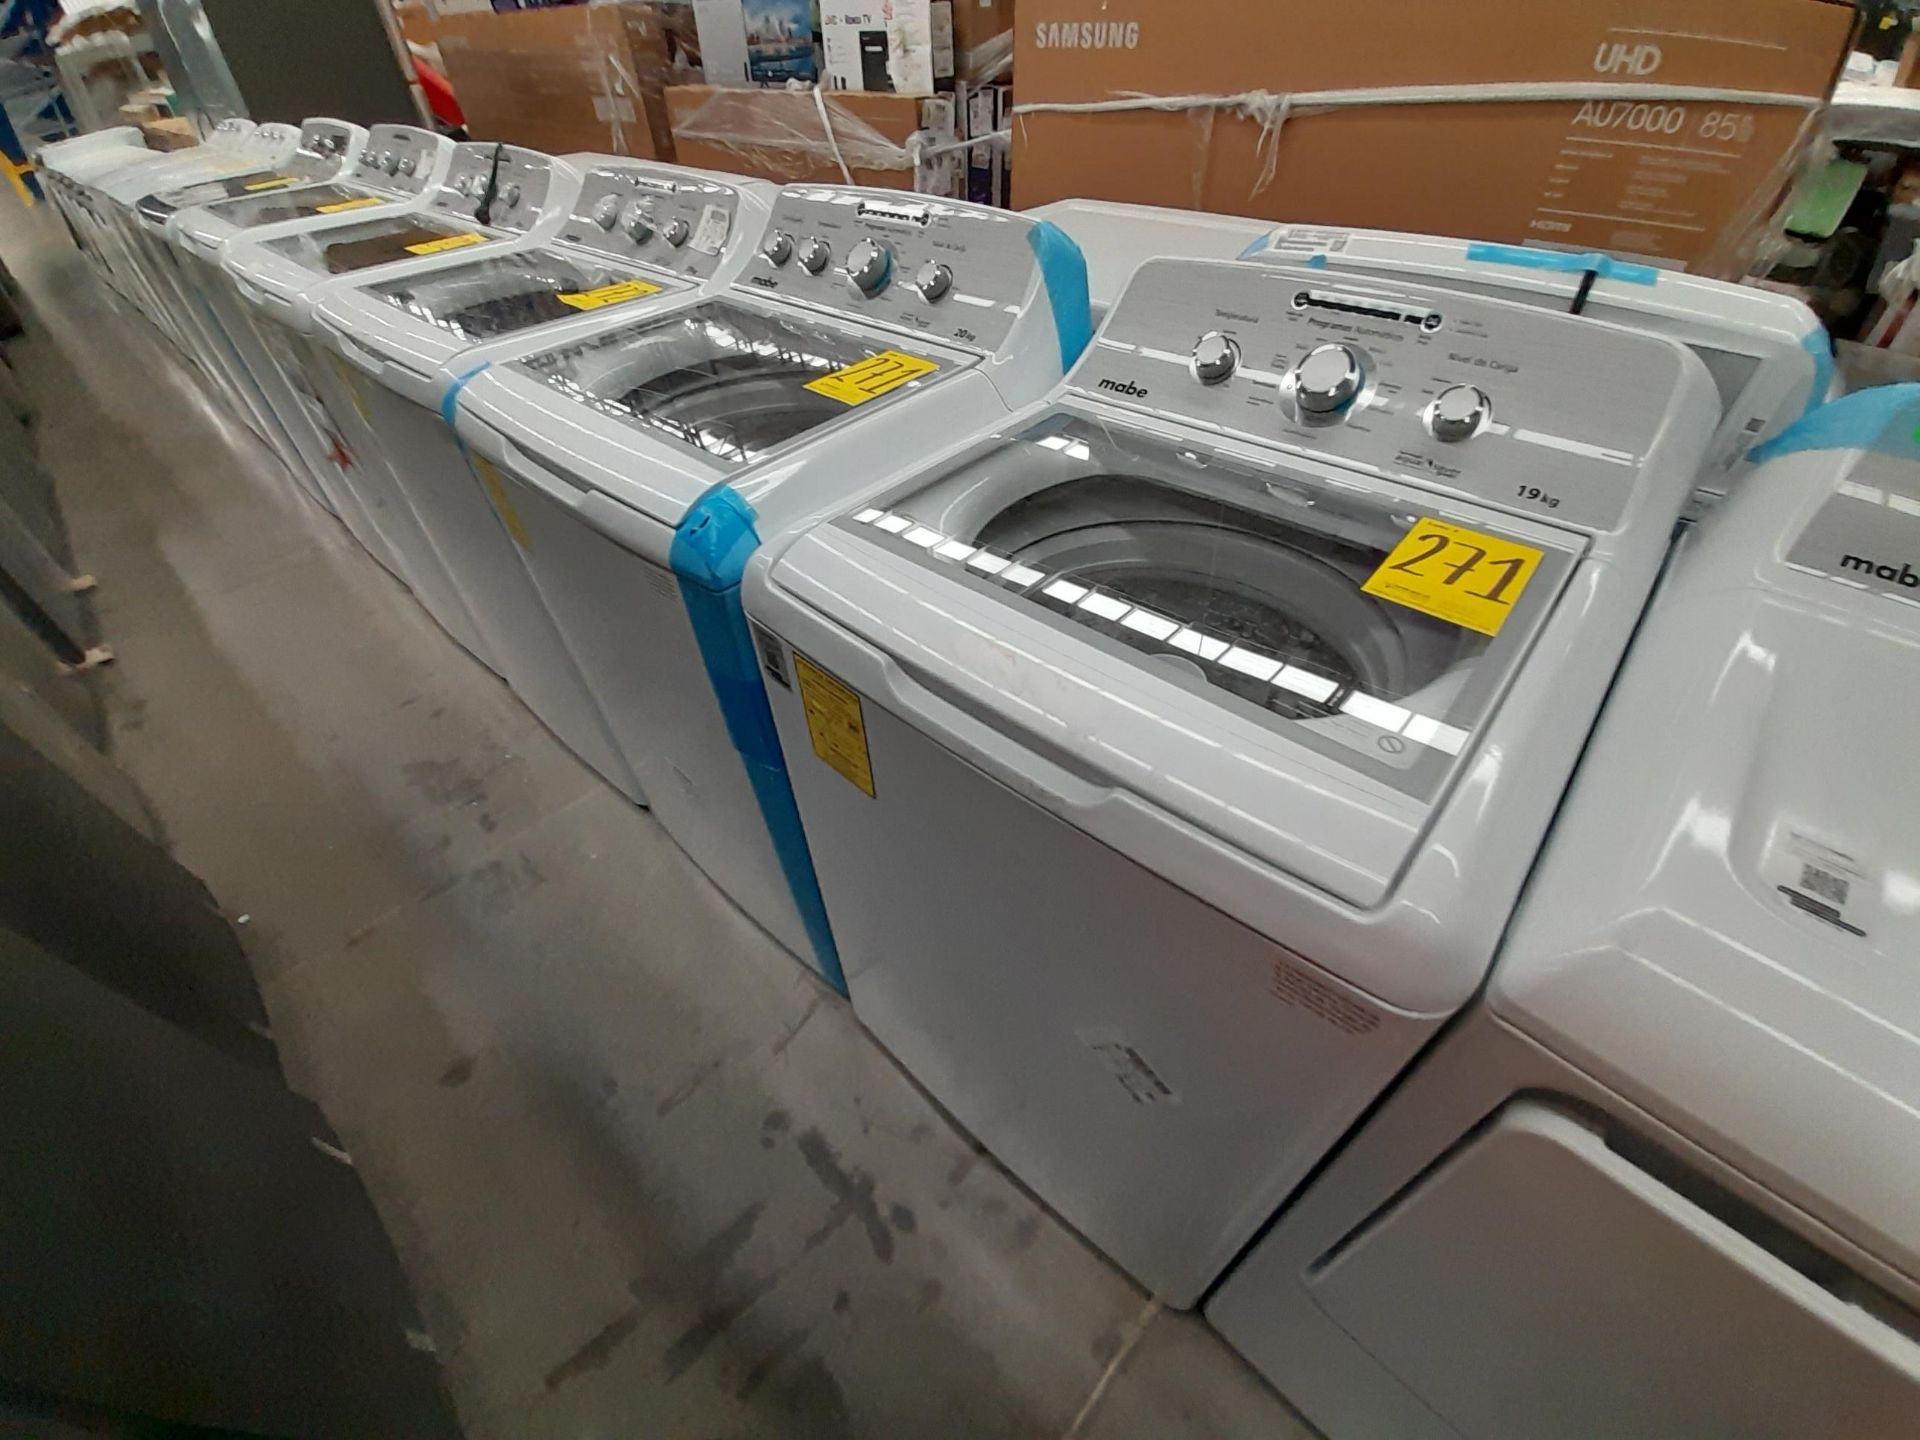 Lote de 2 lavadoras Contiene: 1 lavadora de 20 KG, marca MABE, modelo LMA70214VBAB03, serie S12869, - Image 2 of 5